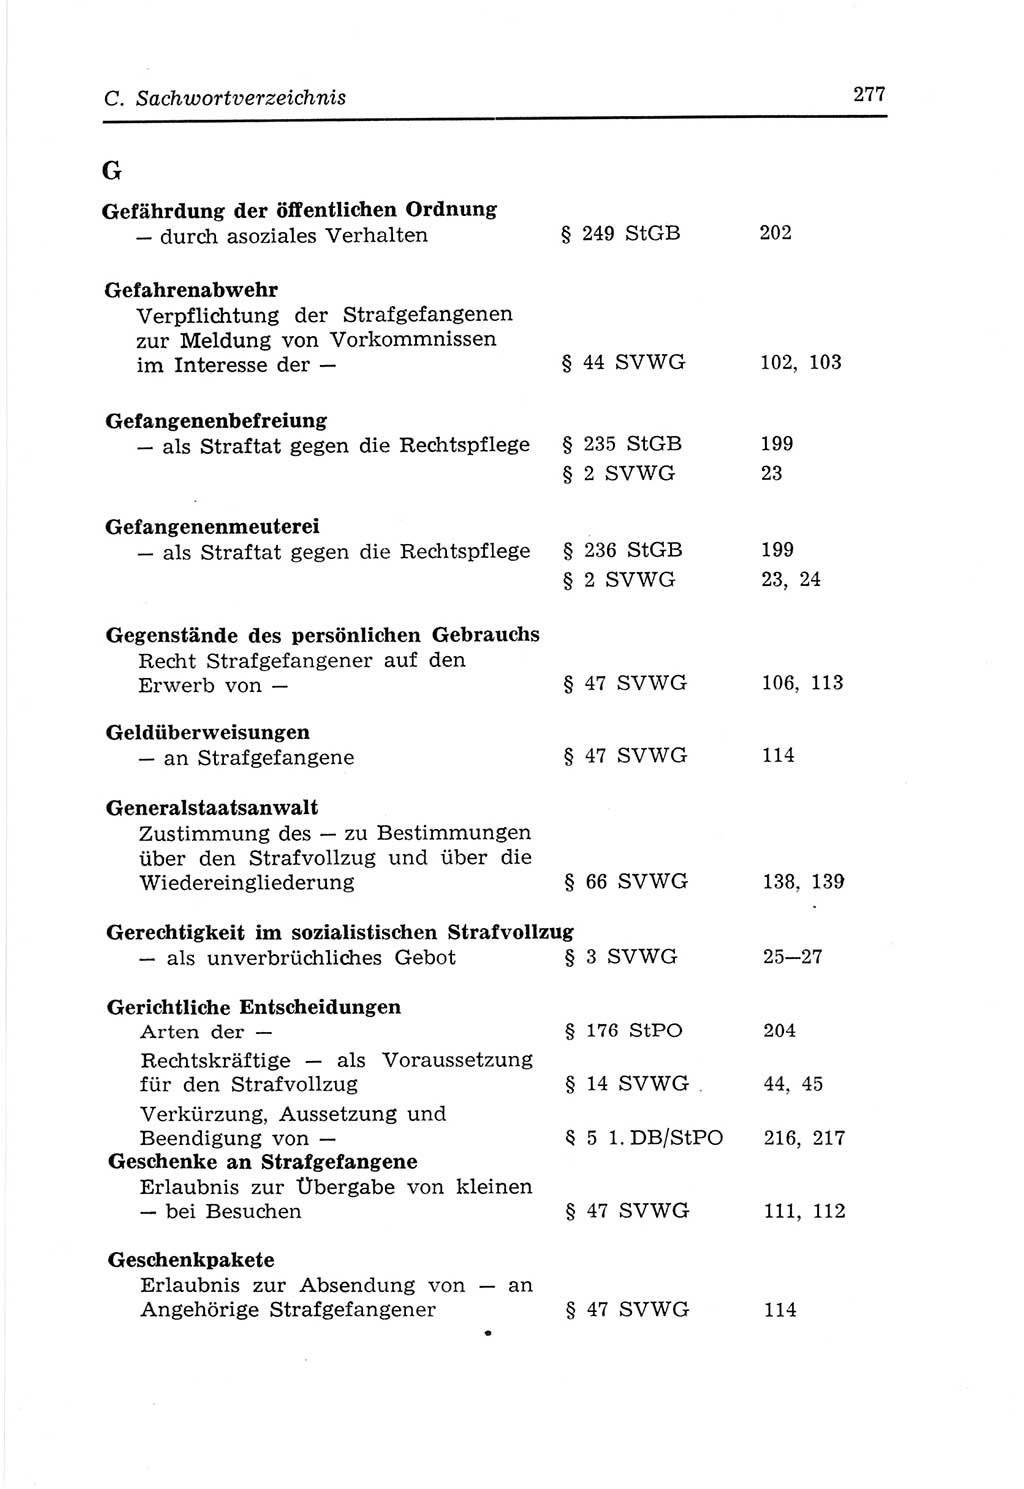 Strafvollzugs- und Wiedereingliederungsgesetz (SVWG) der Deutschen Demokratischen Republik (DDR) 1968, Seite 277 (SVWG DDR 1968, S. 277)